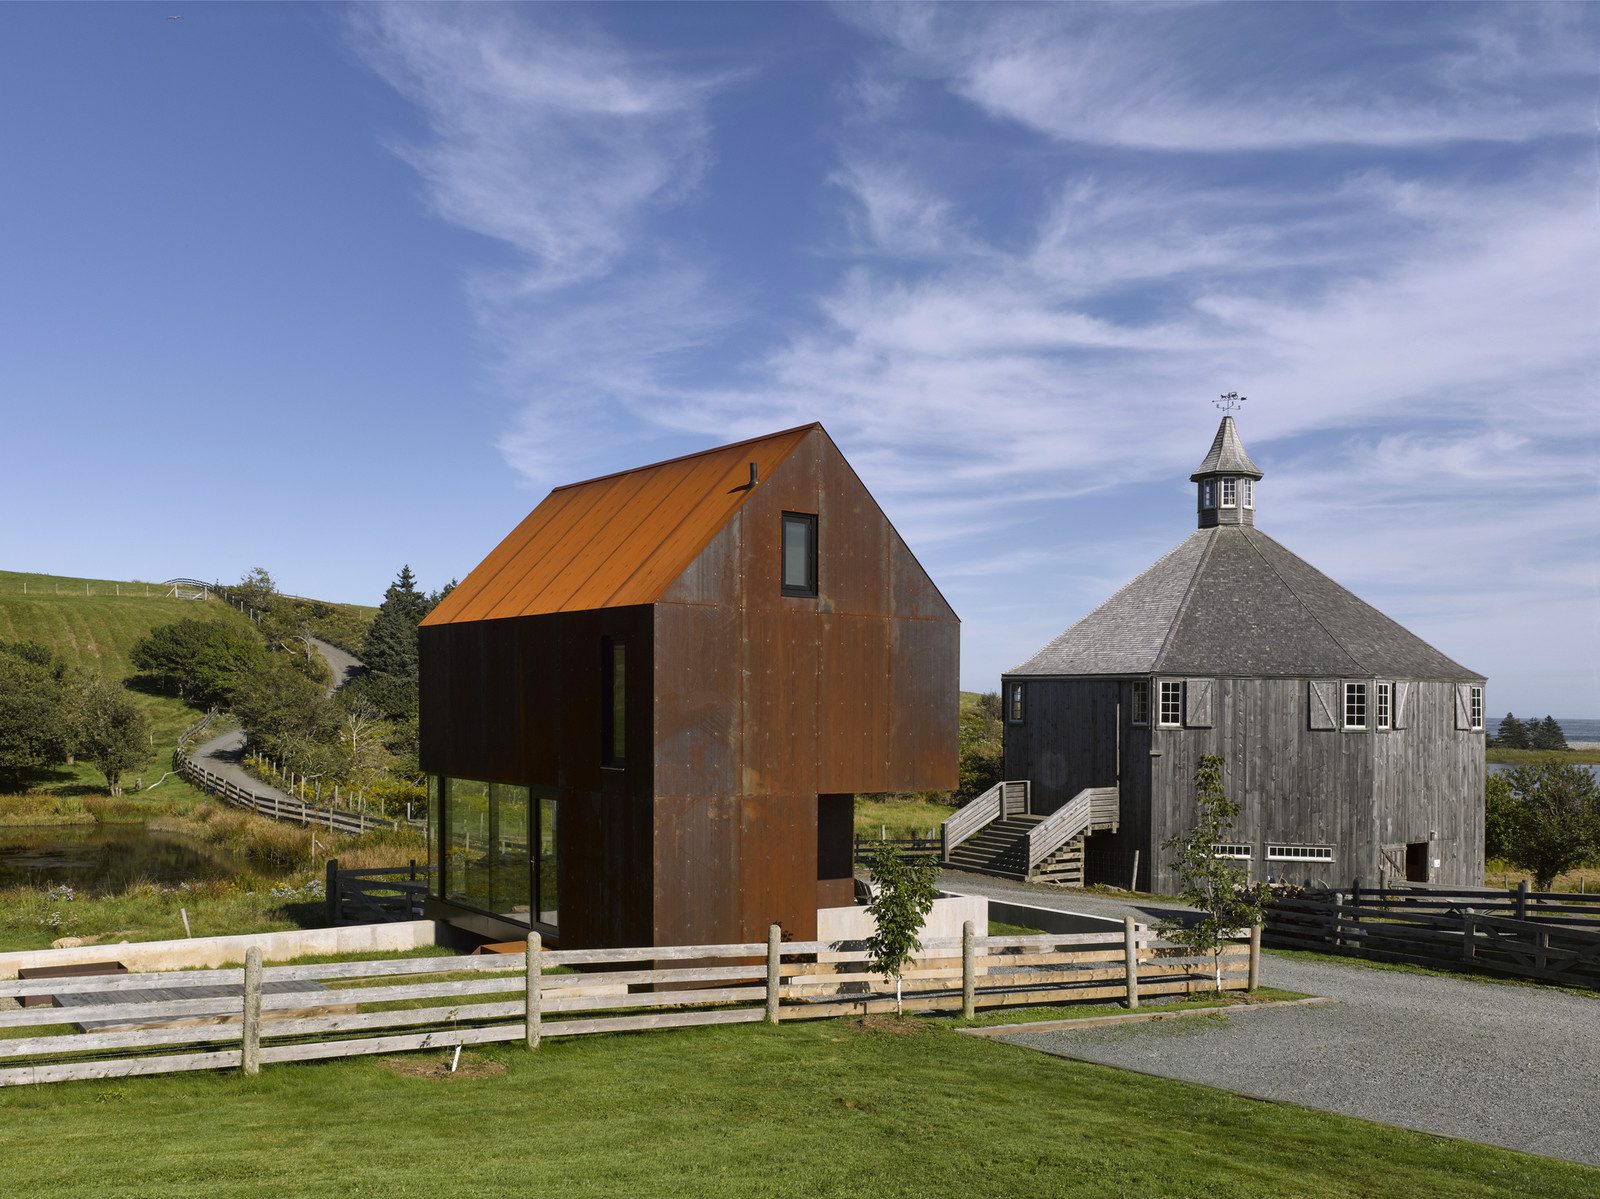 Farmhouse in Canada